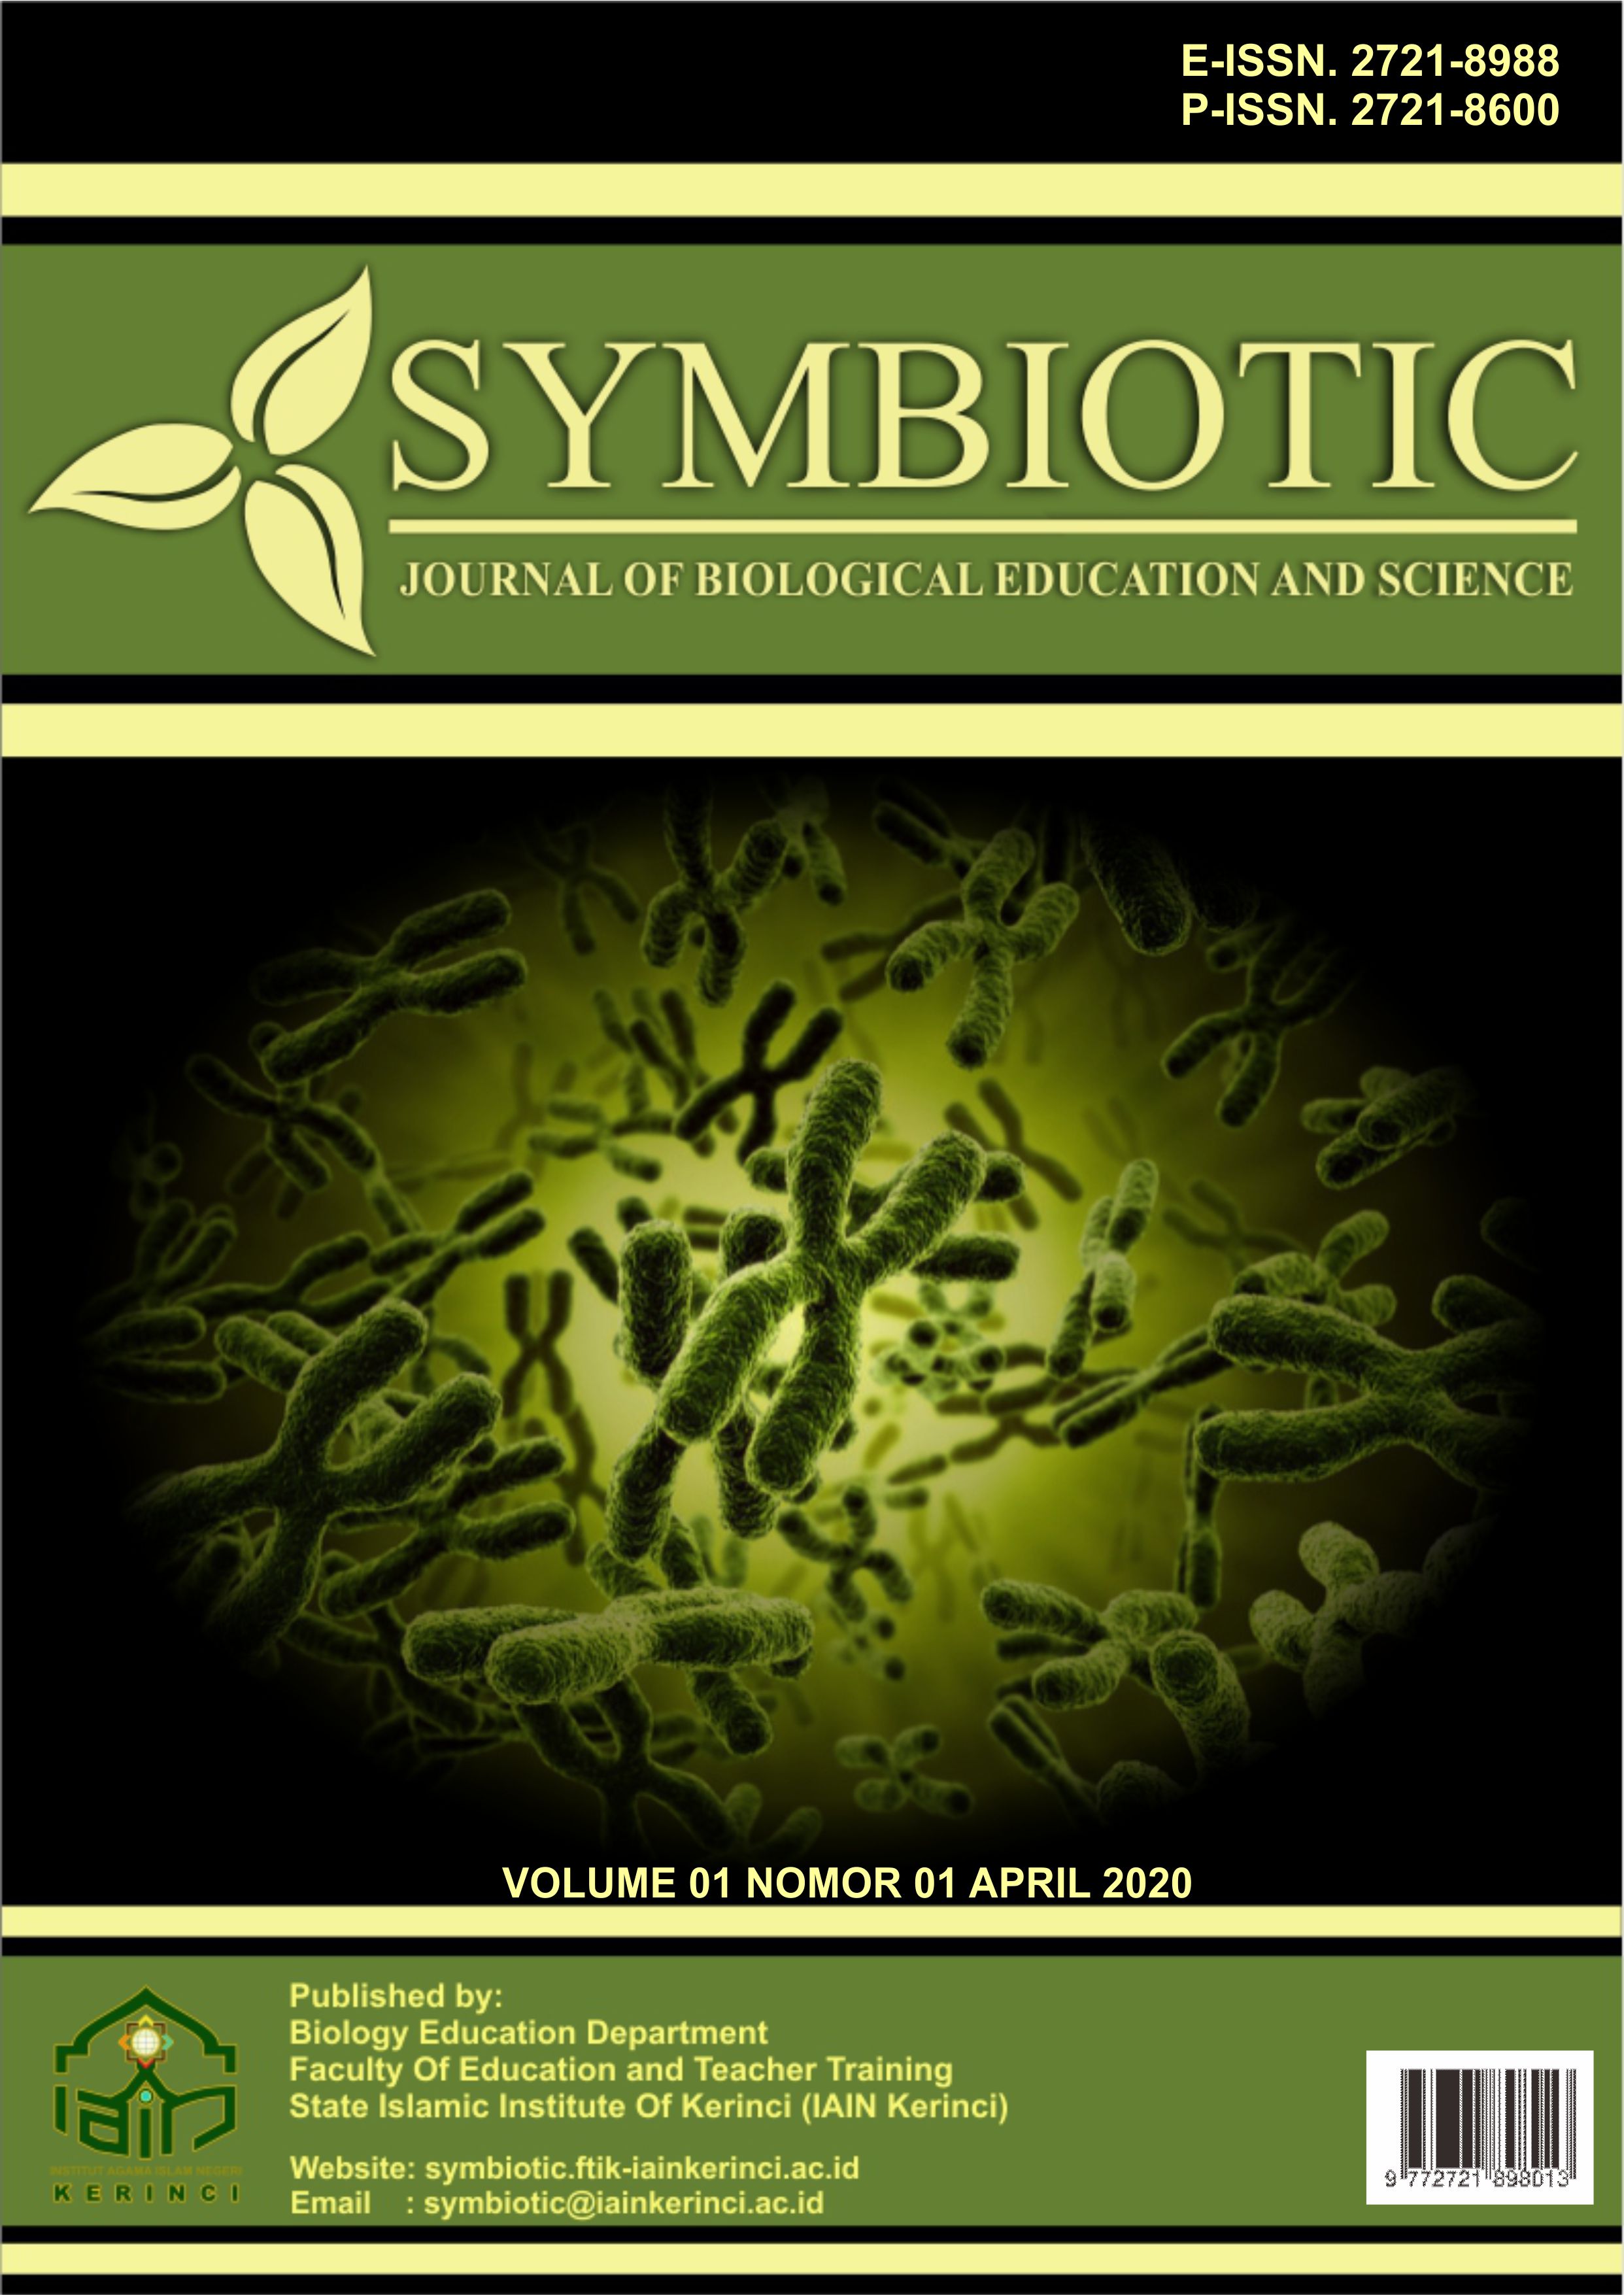 Symbiotic Volume 01 Nomor 01 April 2020